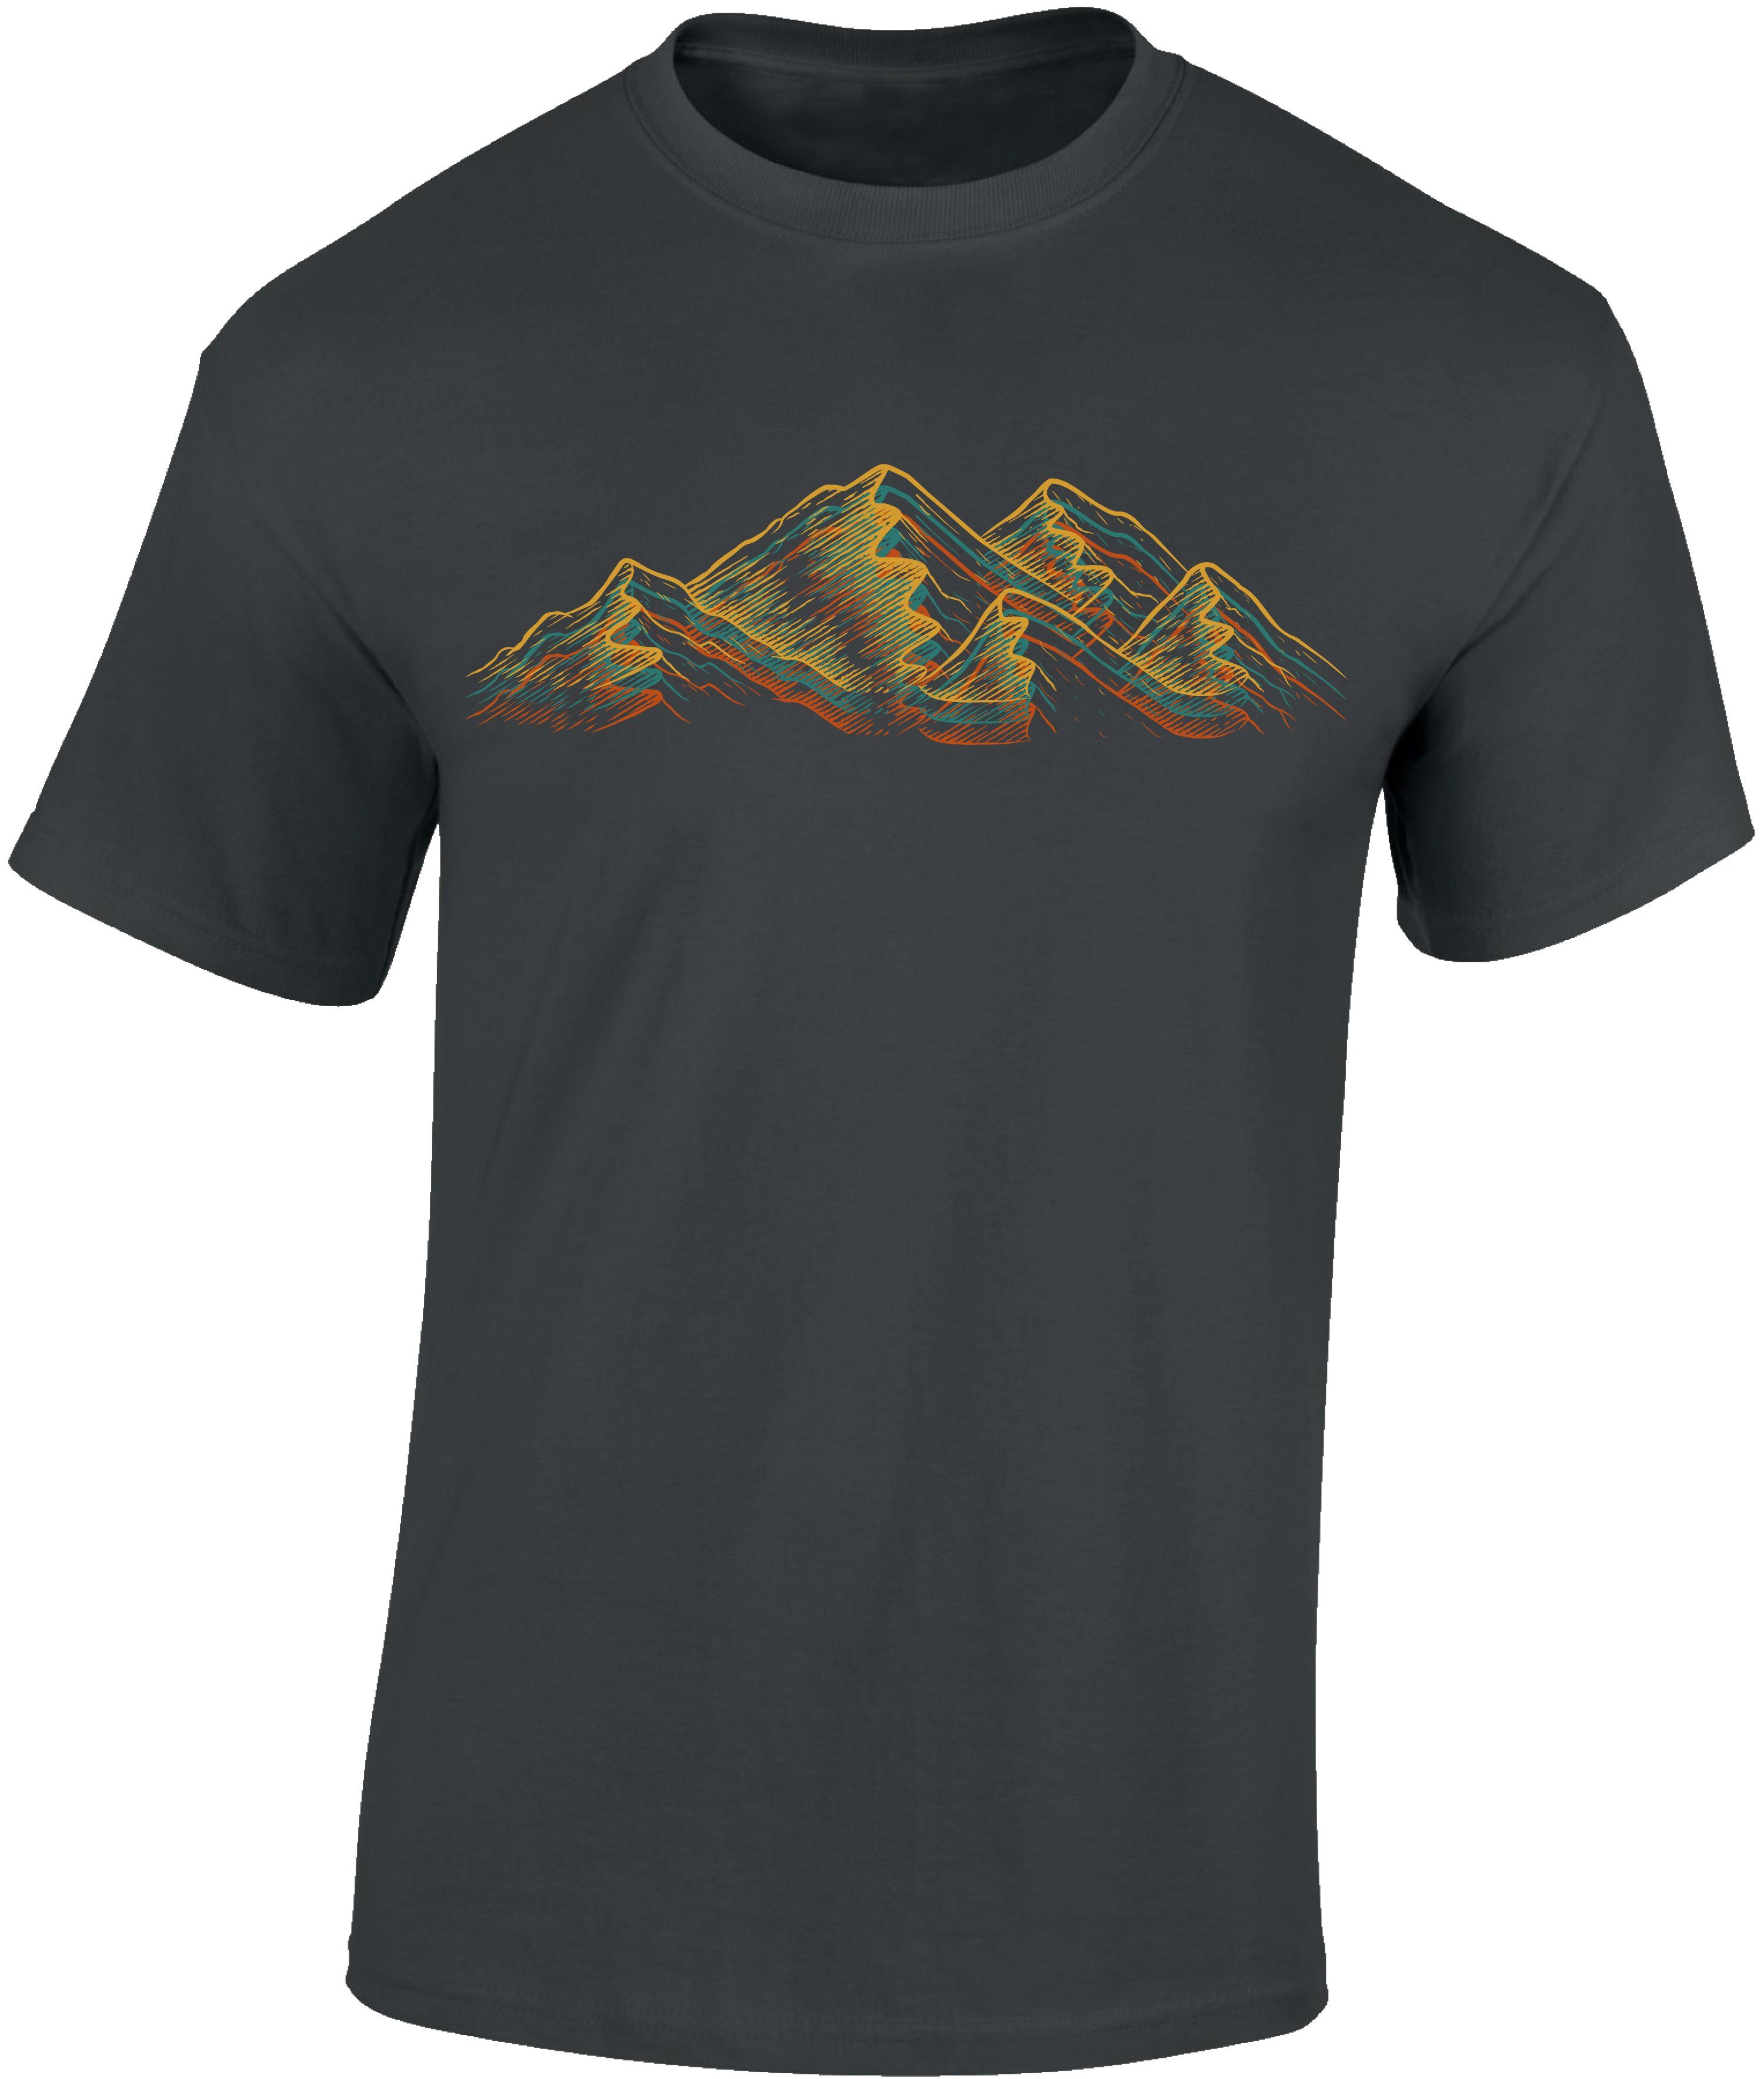 Wander : Print-Shirt Alpen Dark Shirt Grey Baddery aus hochwertiger Siebdruck, - T-Shirt Wanderfreunde - Kletter Bergsteiger auch für Baumwolle Übergrößen,